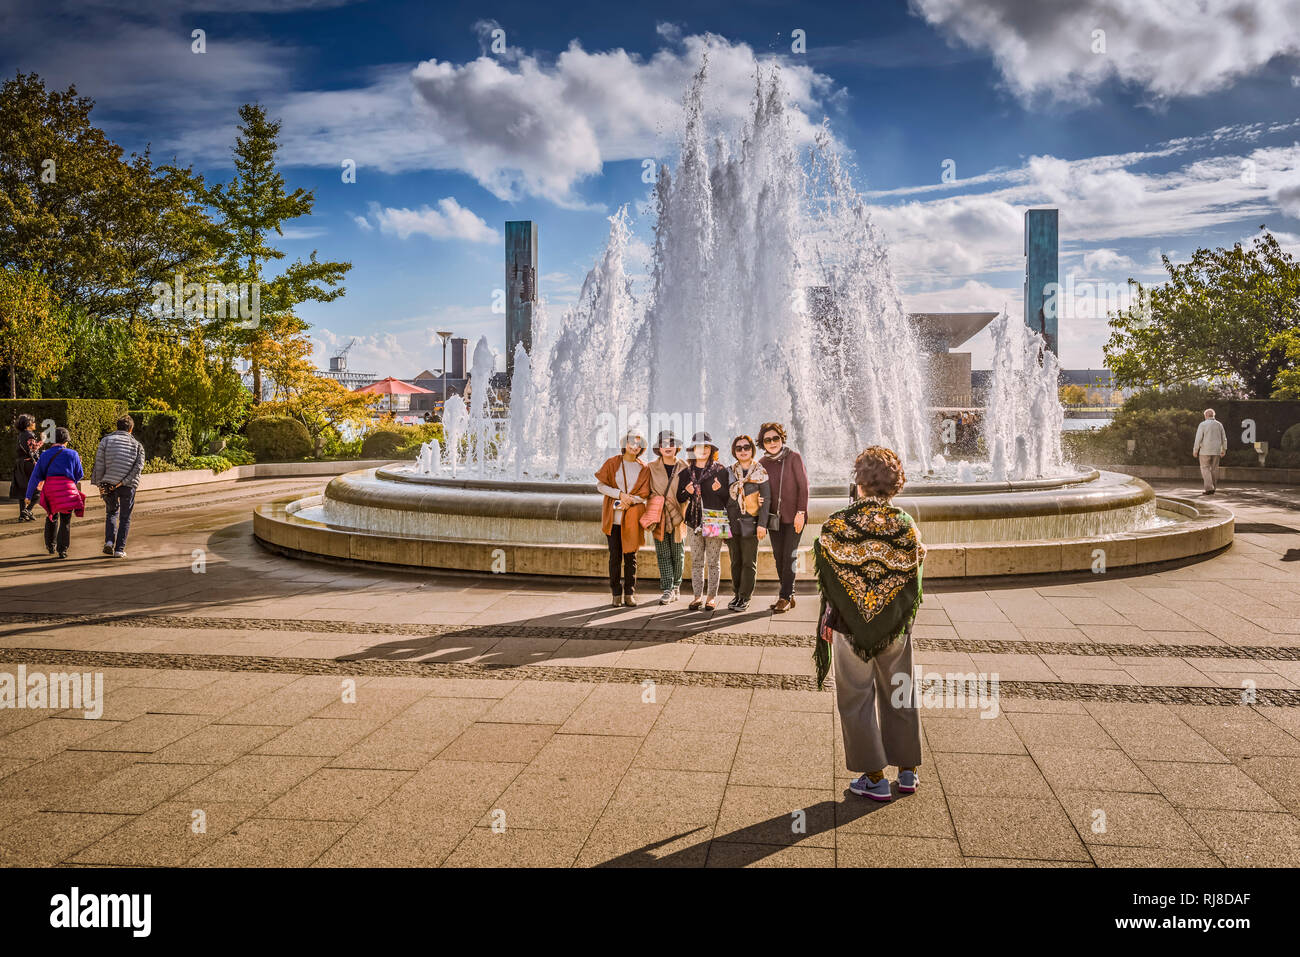 Europa, Dänemark, Kopenhagen, Zentrum, die Fontänen vor dem Schloss Amalienborg, Touristen, im Hintergrund die Neue Oper Stock Photo